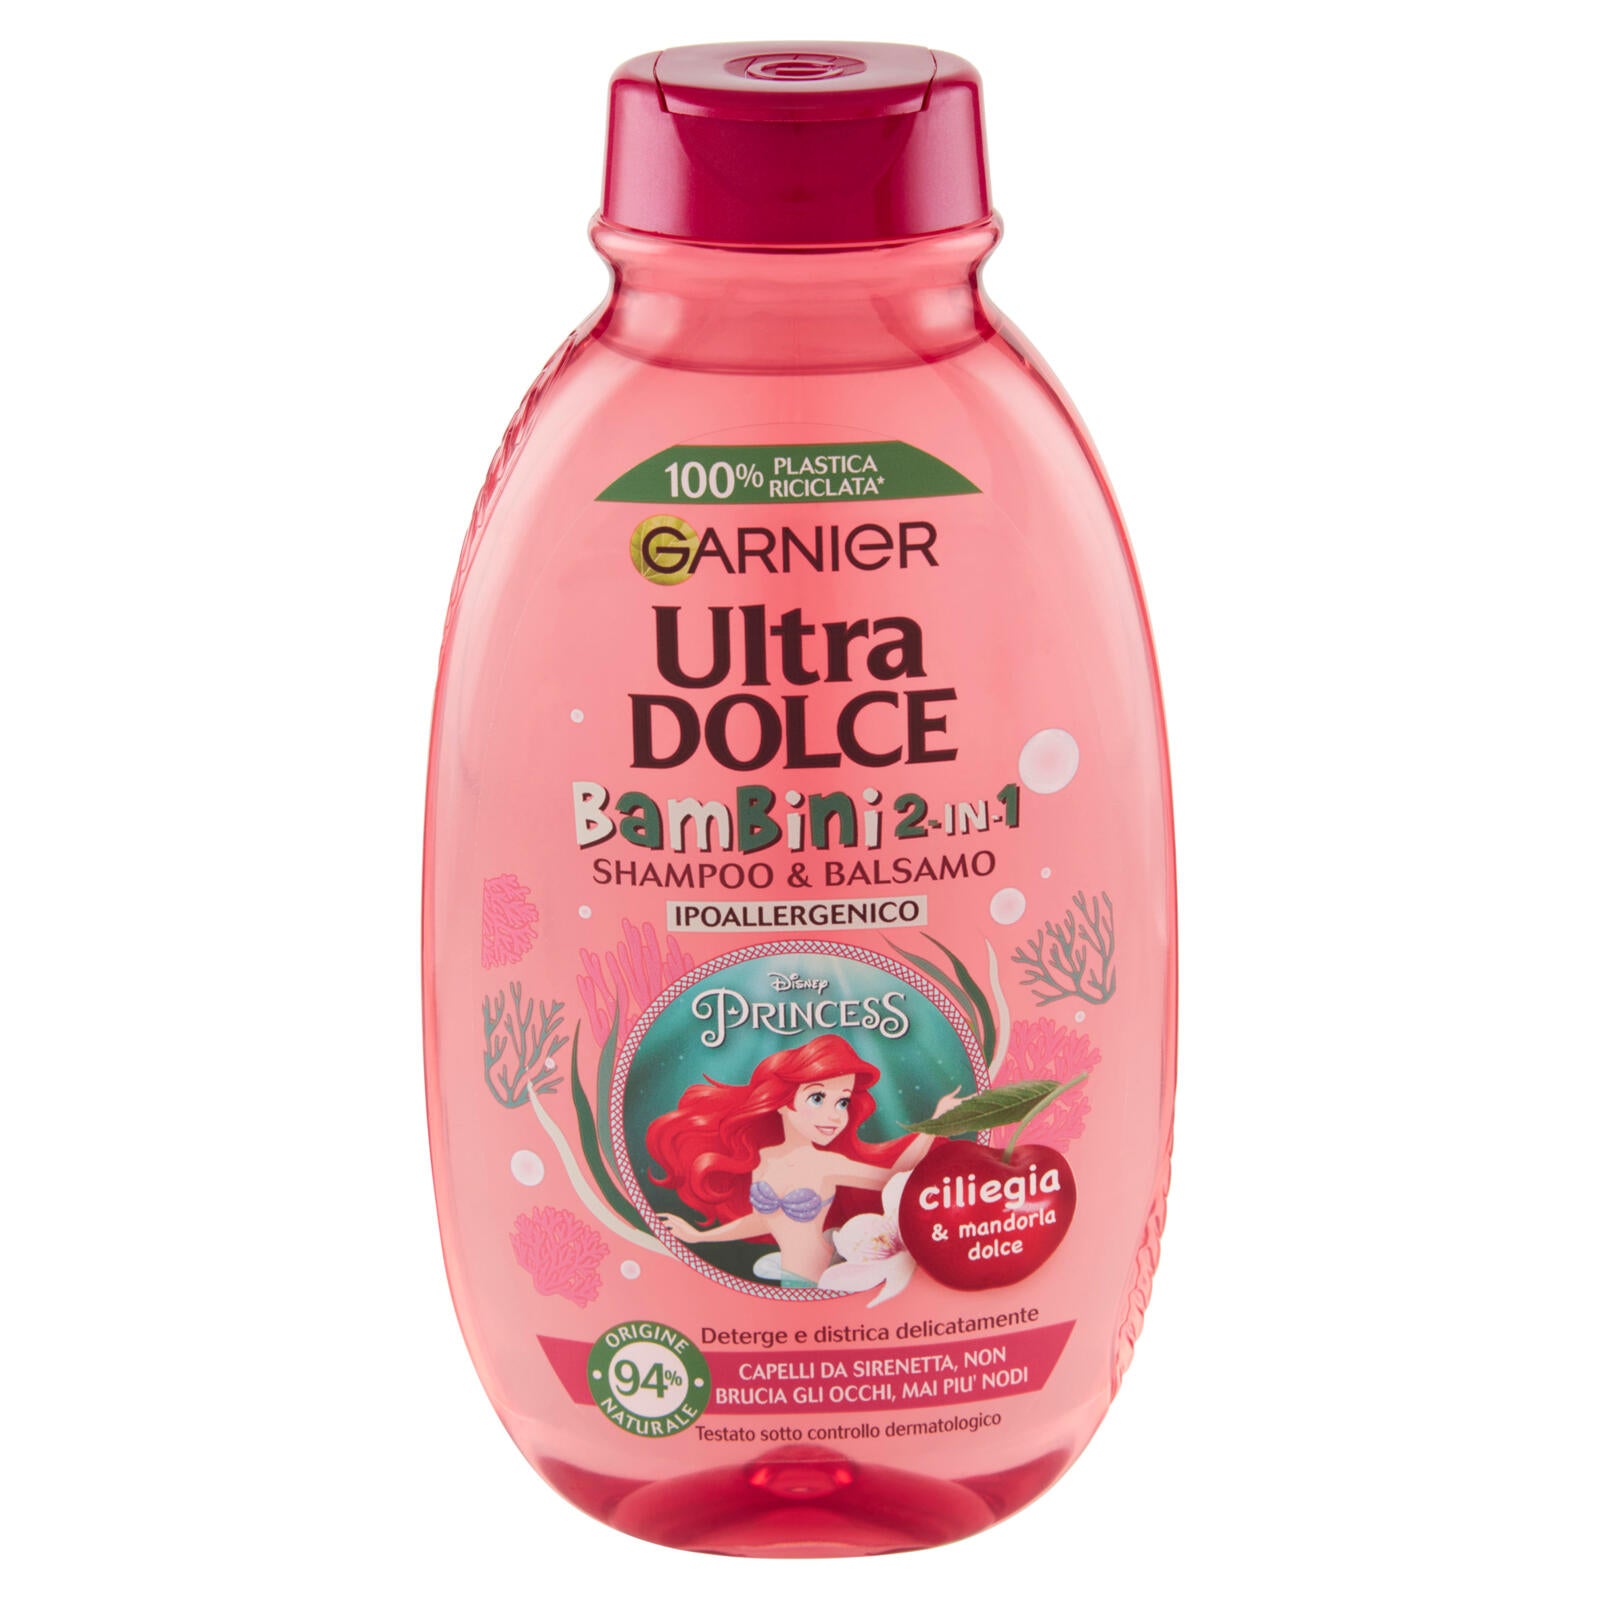 Garnier Ultra Dolce Shampoo 2in1 per Bambine alla Ciliegia e Mandorla Dolce, senza parabeni, 250 ml